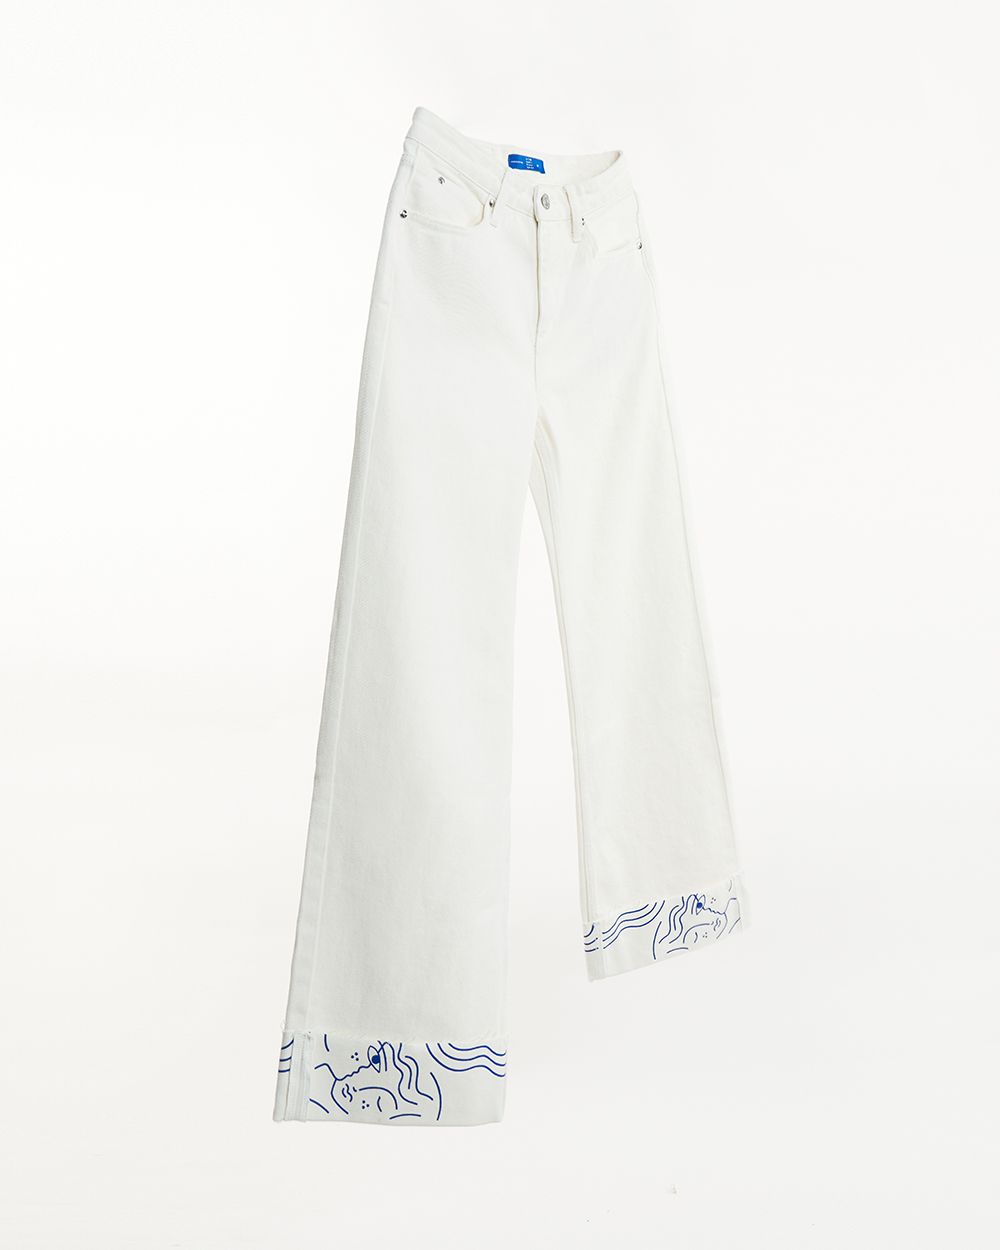 Brooklyn Cuffed Jeans - Blue Print